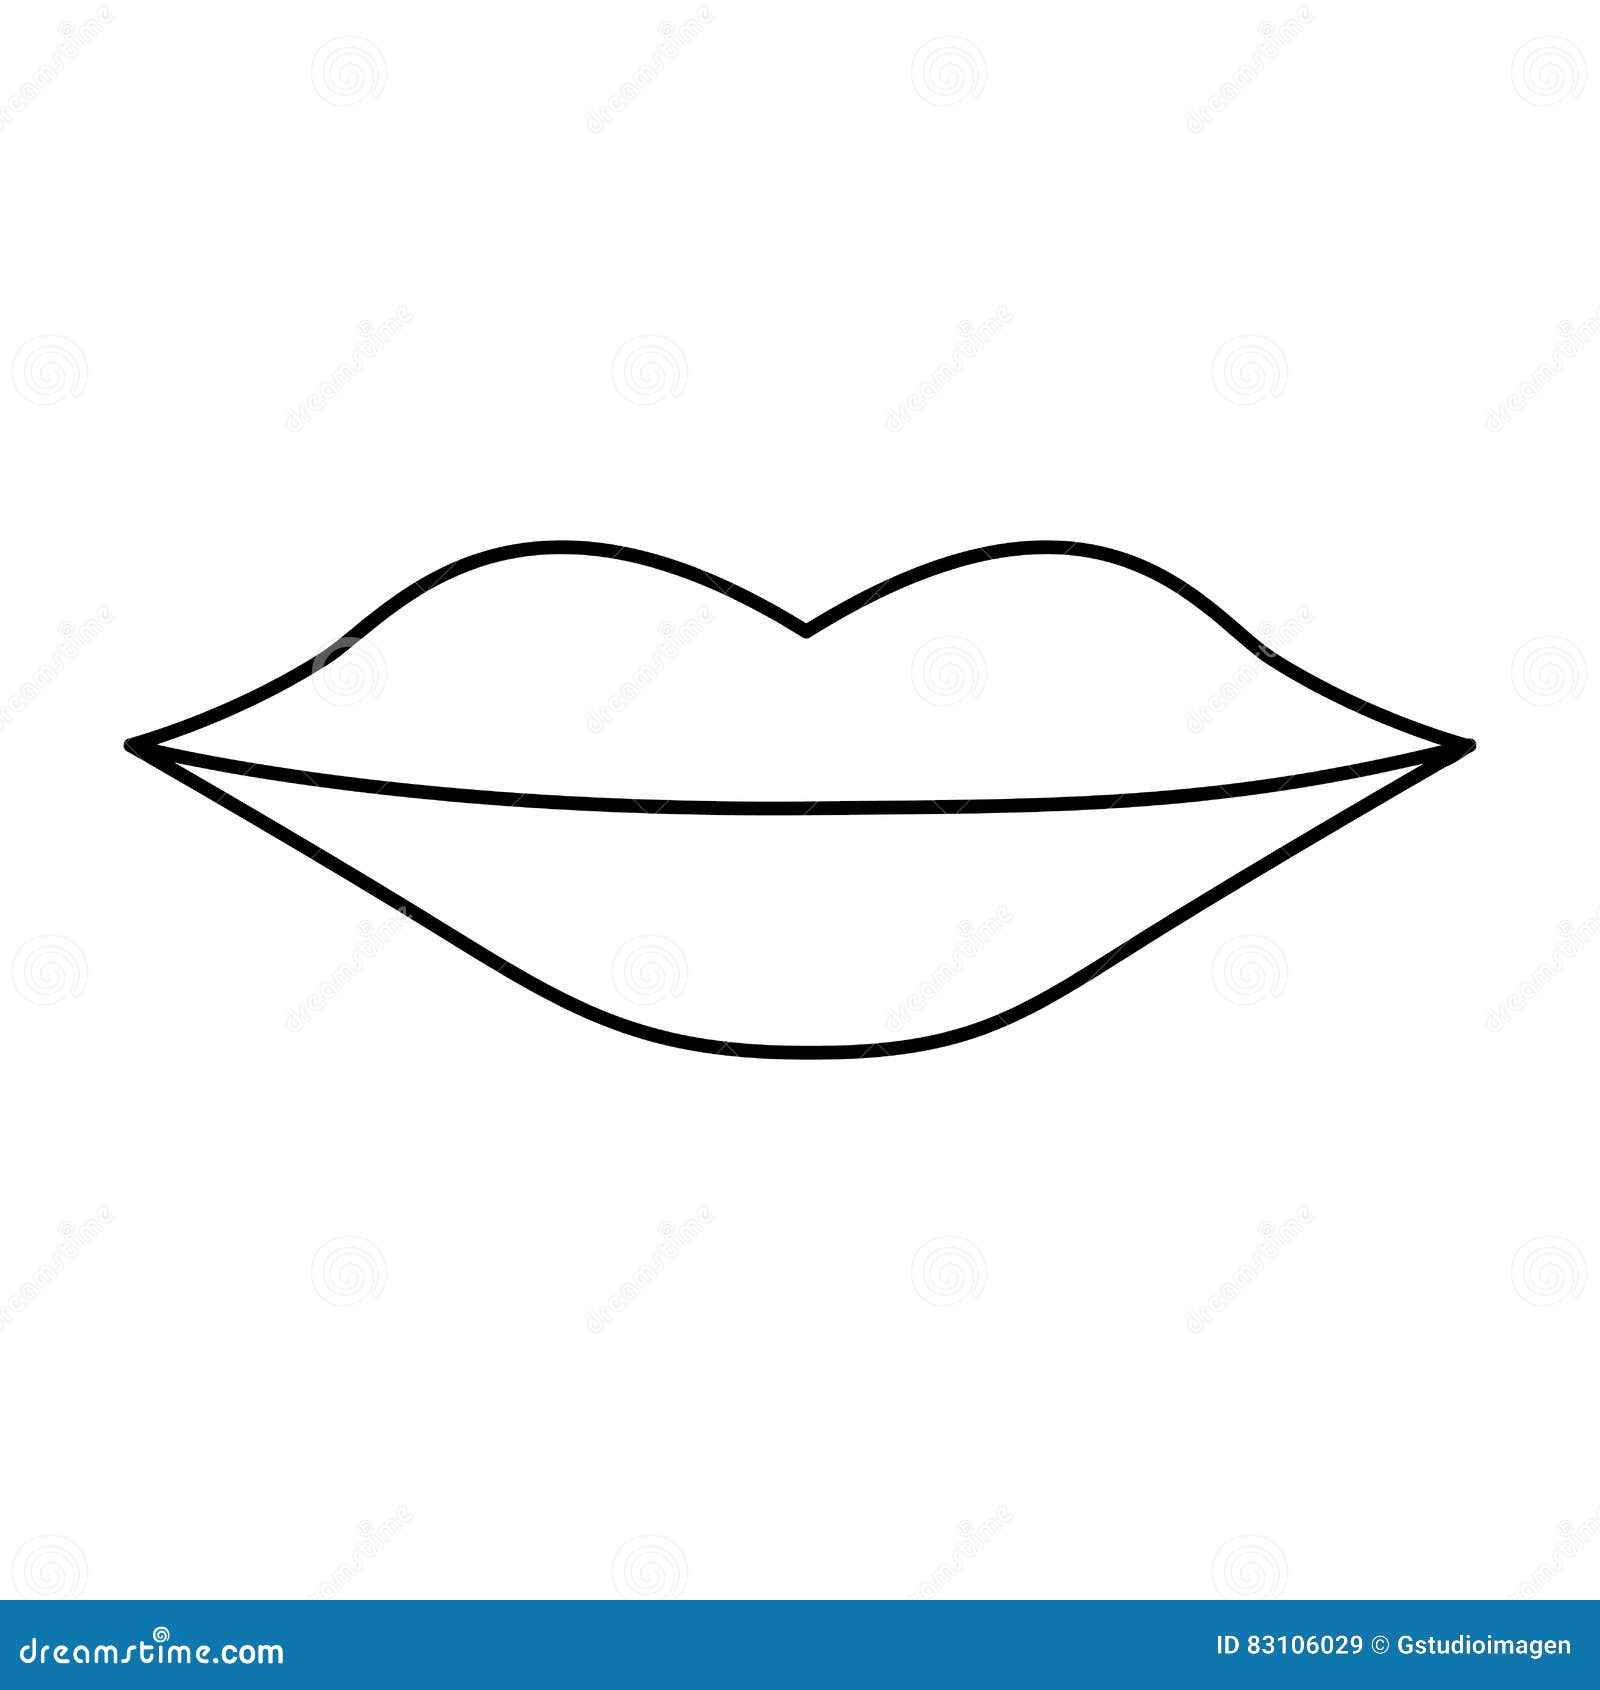 怎么画出好看的嘴巴和嘴唇？教你画不同表情下的嘴巴和嘴唇！ - 学院 - 摸鱼网 - Σ(っ °Д °;)っ 让世界更萌~ mooyuu.com